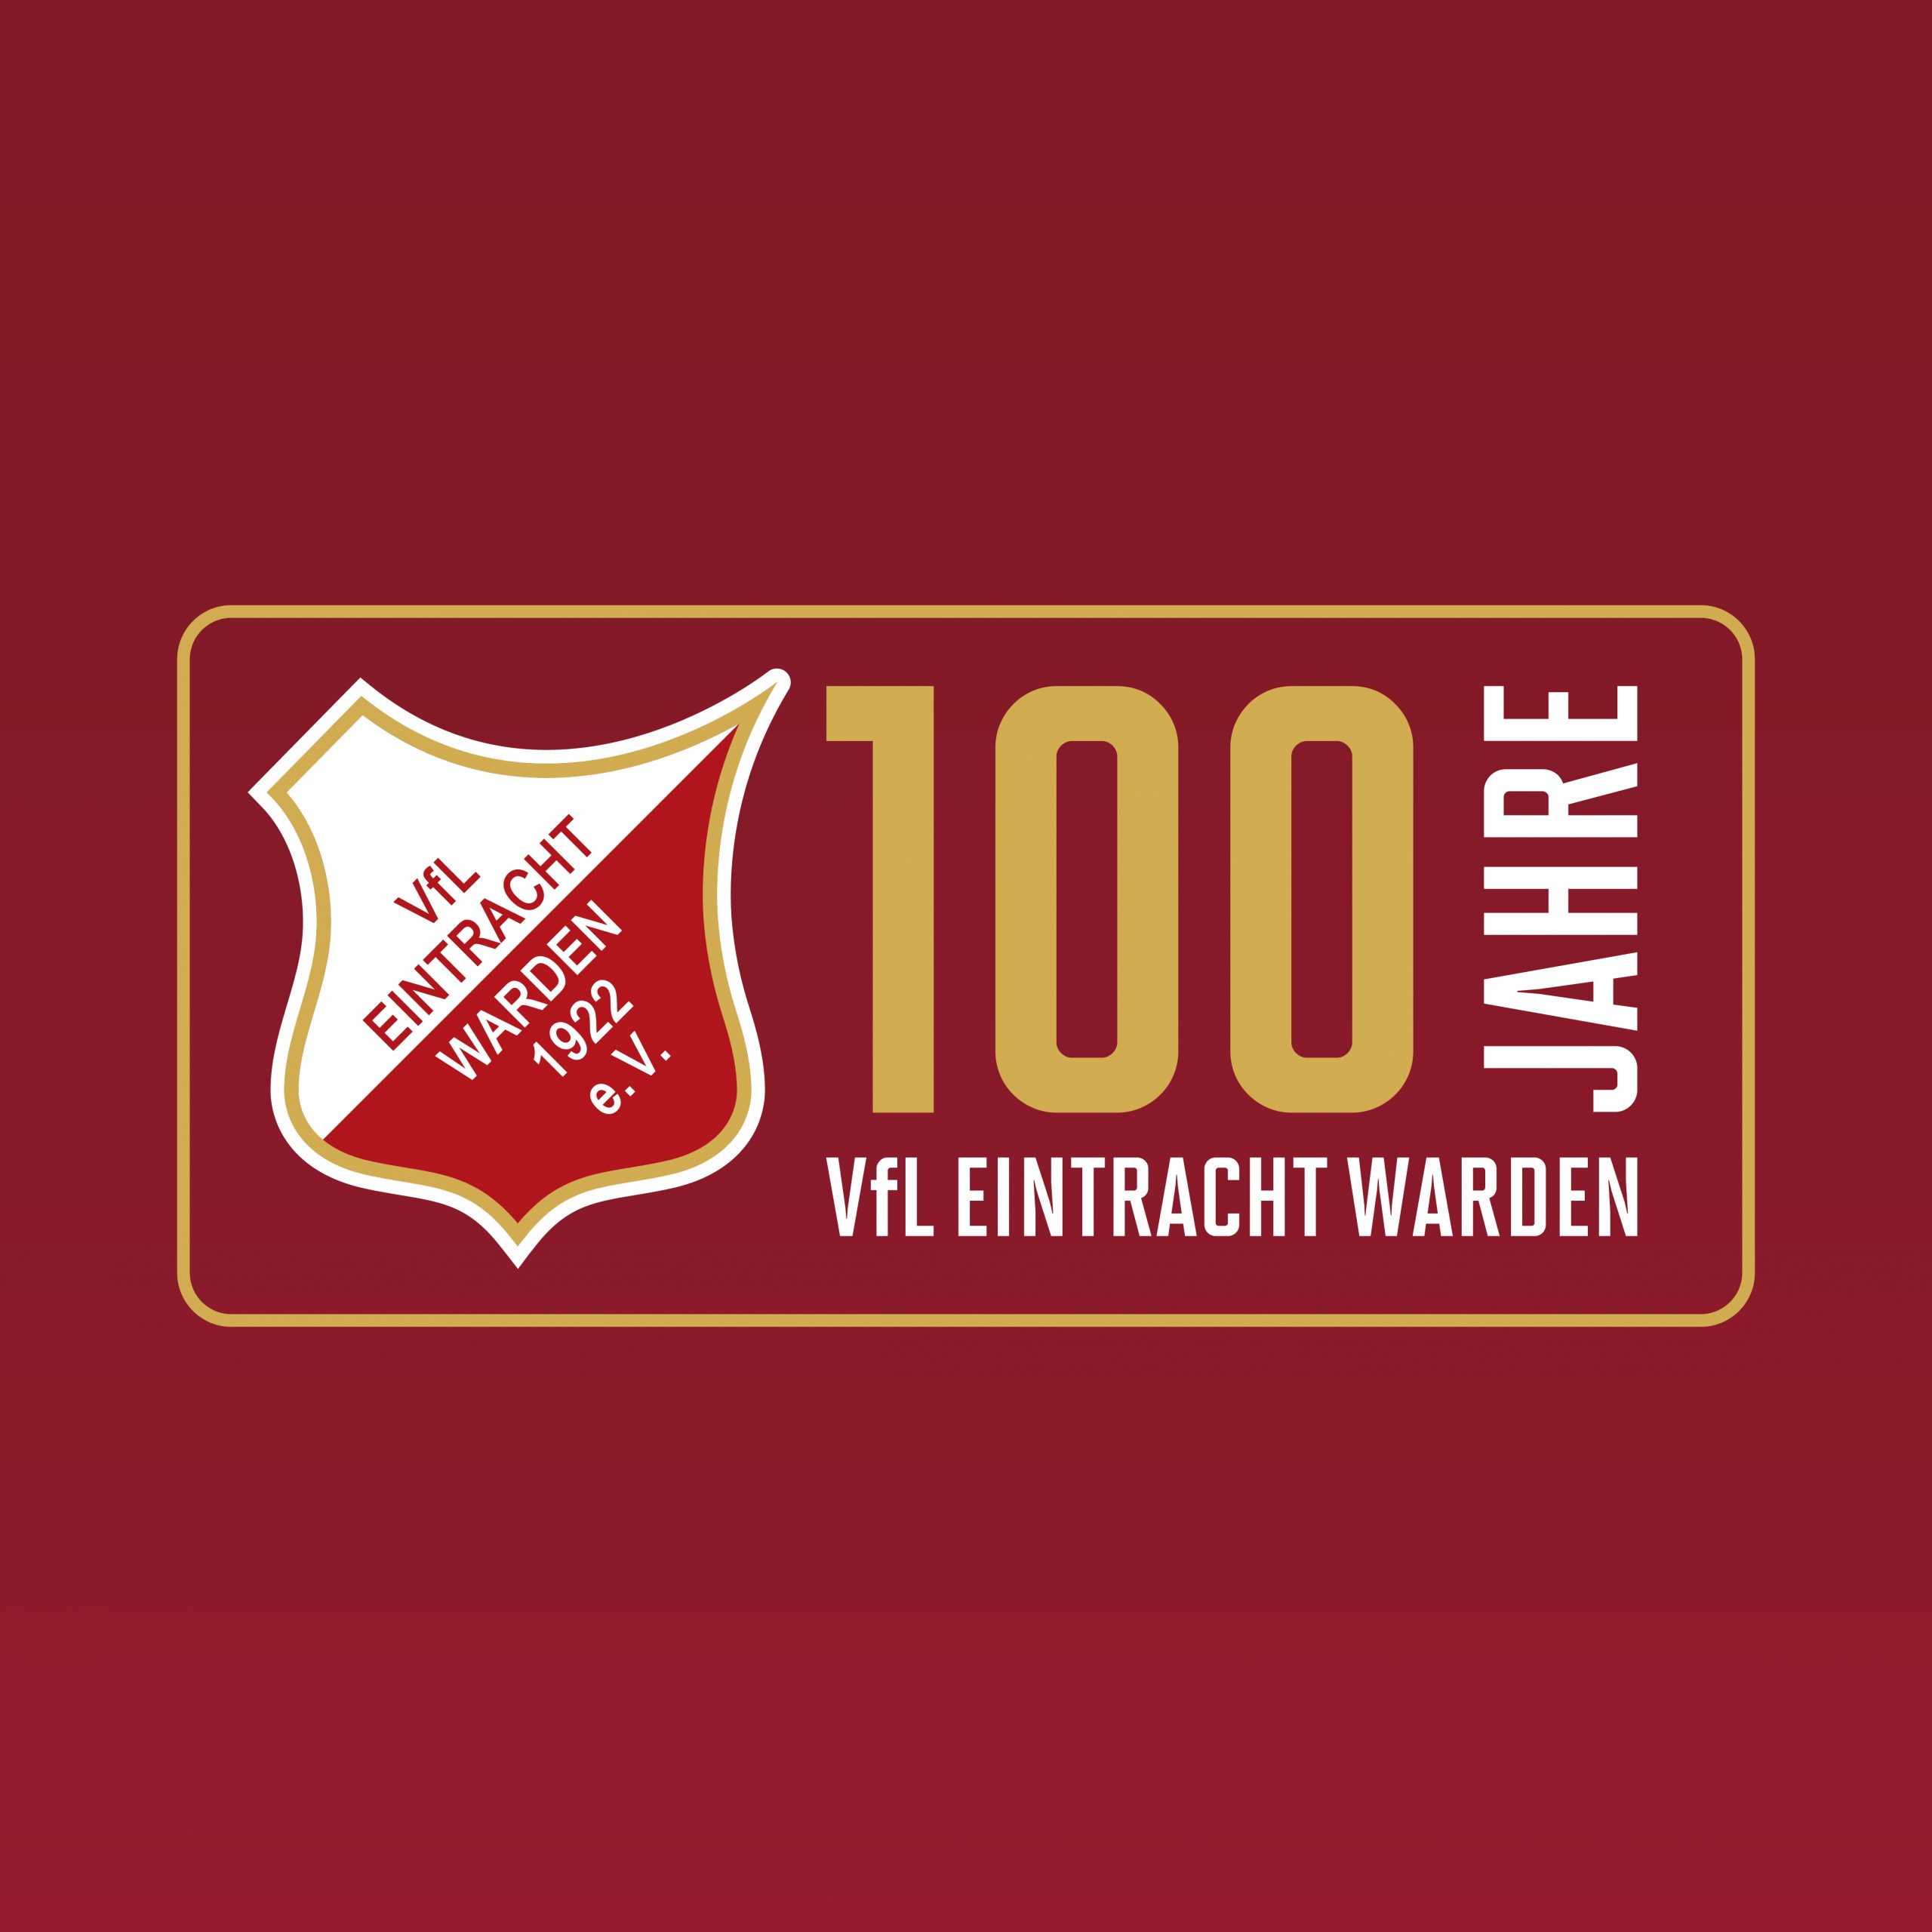 (c) Eintracht-warden.de